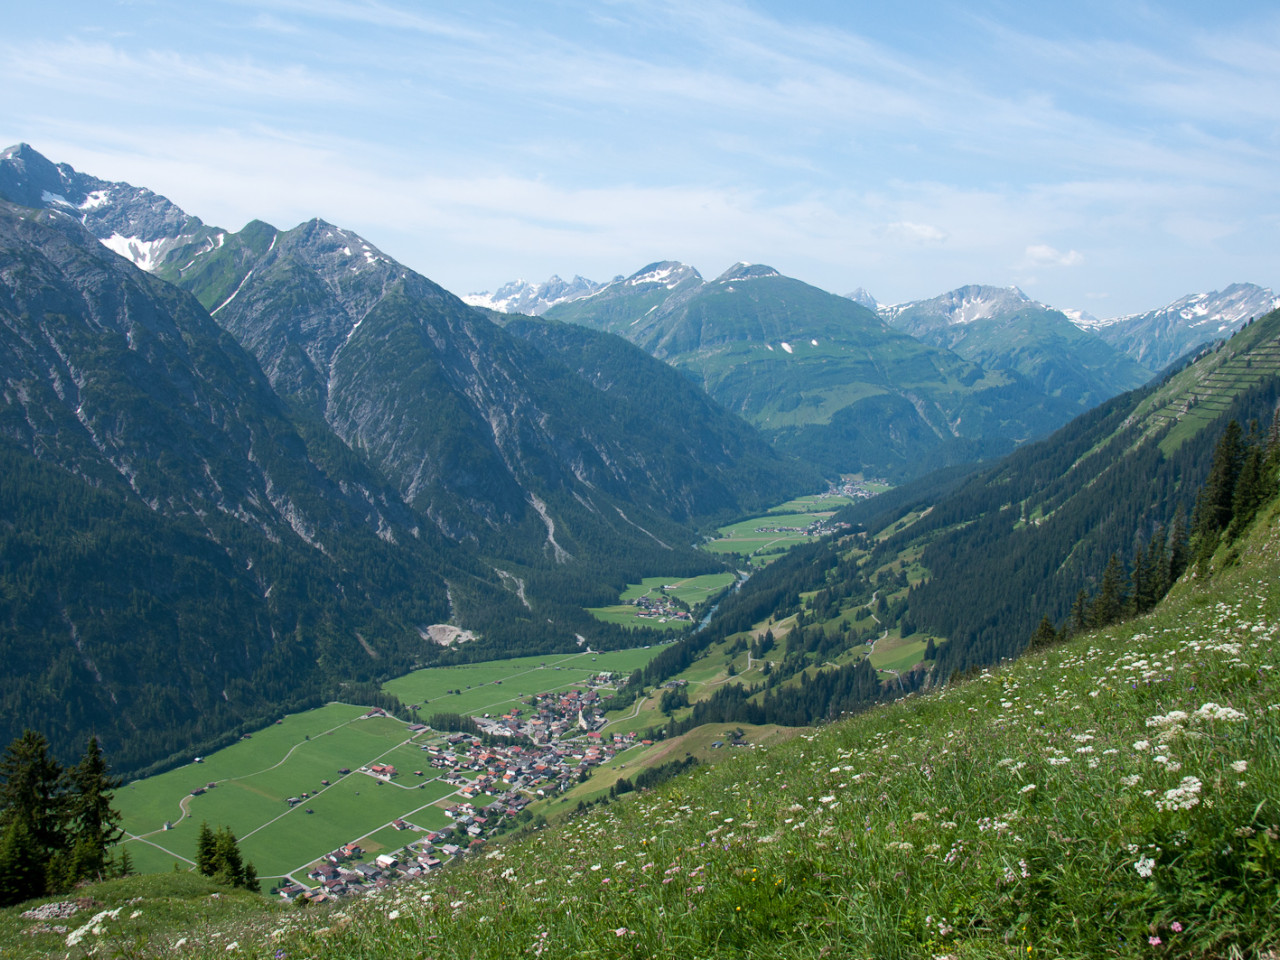  Rothornspitze und Jöchelspitze